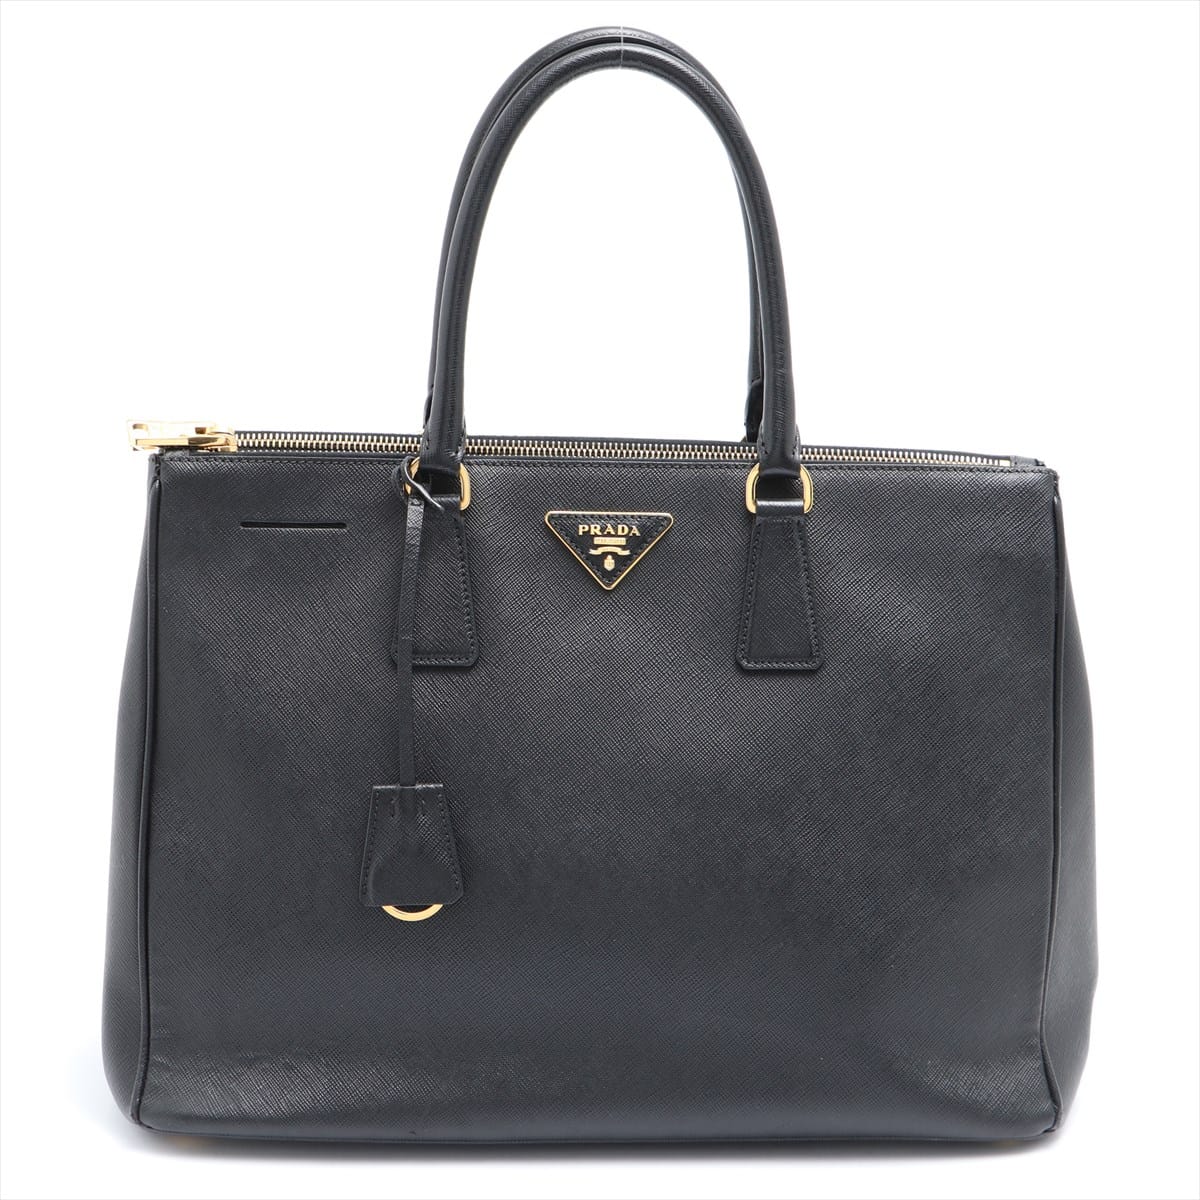 Prada Saffiano Galeria 2way handbag Black